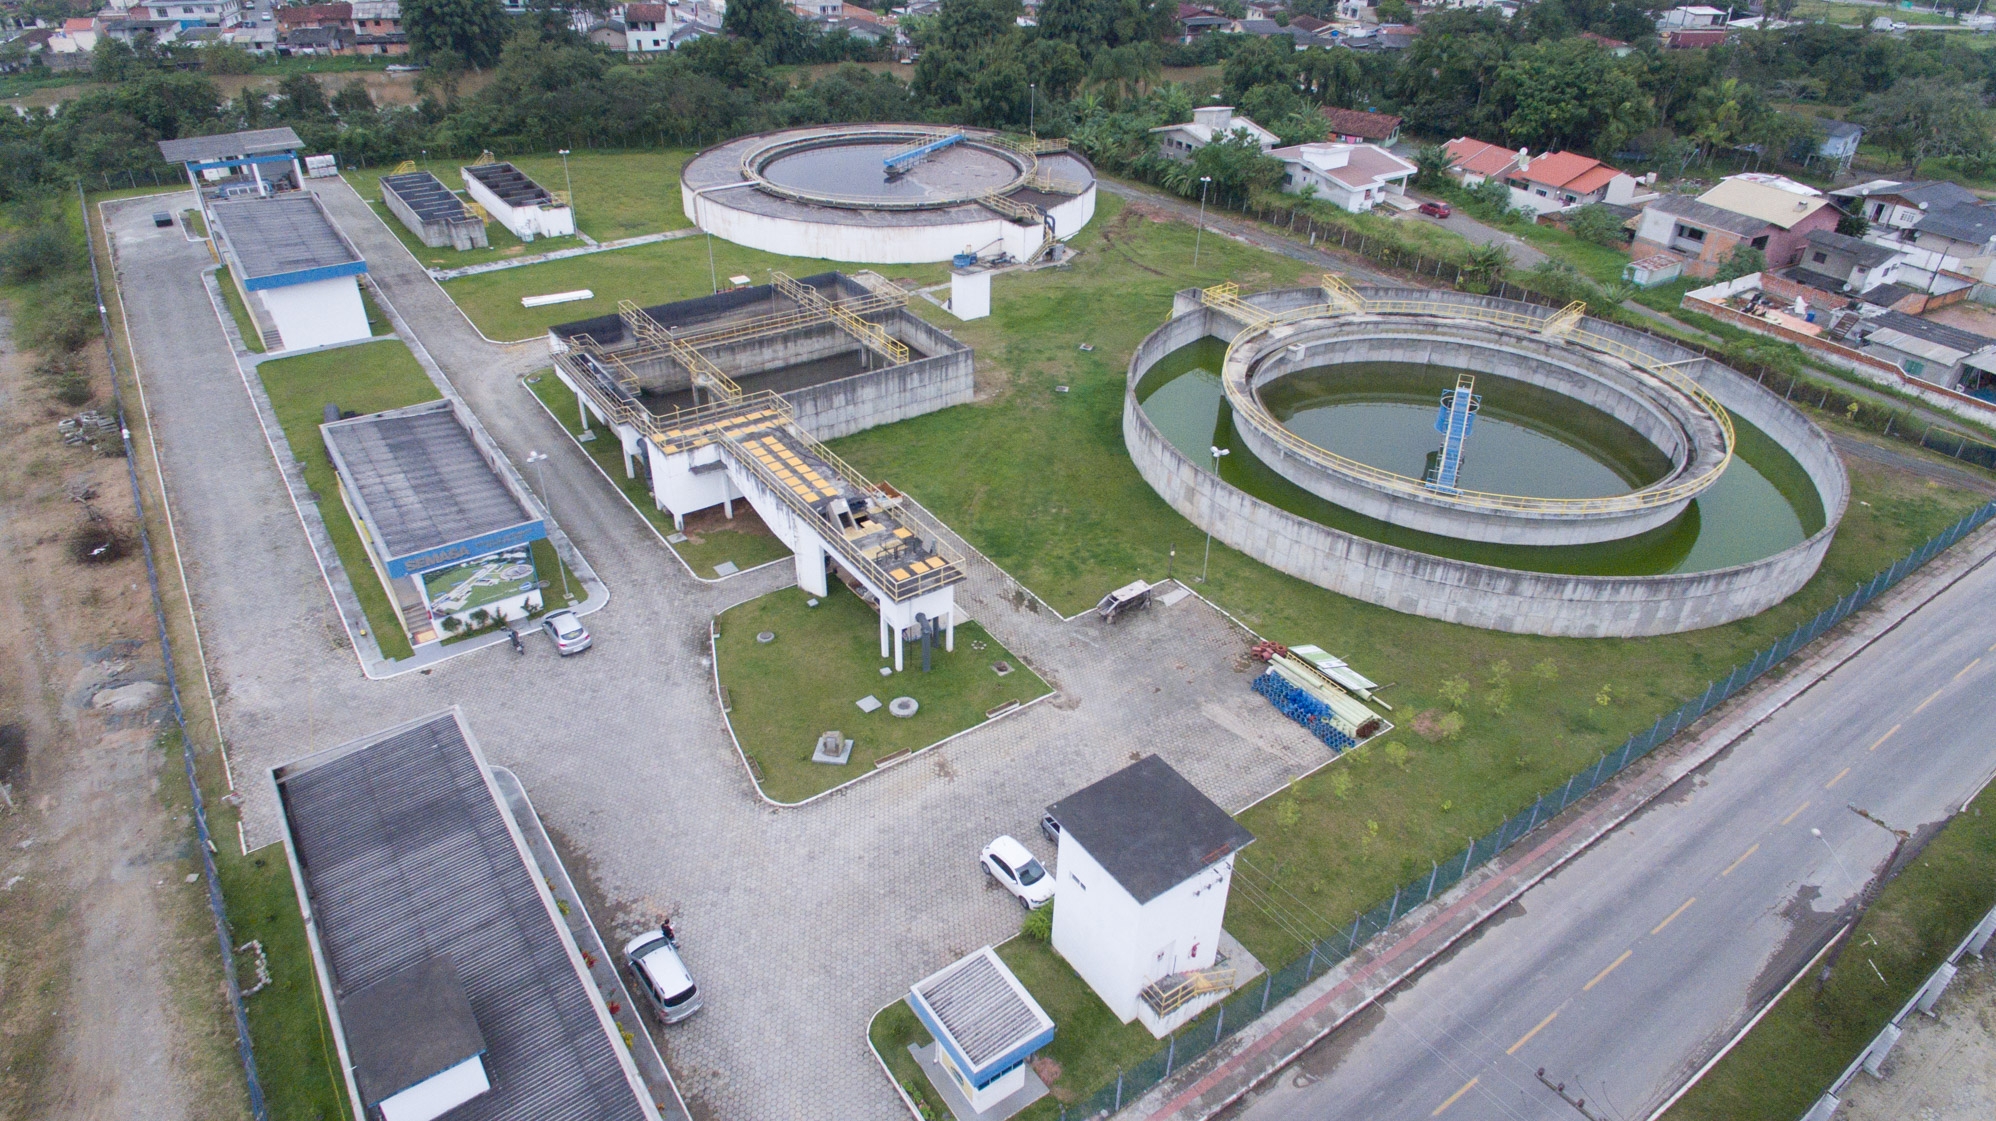 Semasa investe no maior programa de saneamento da história de Itajaí